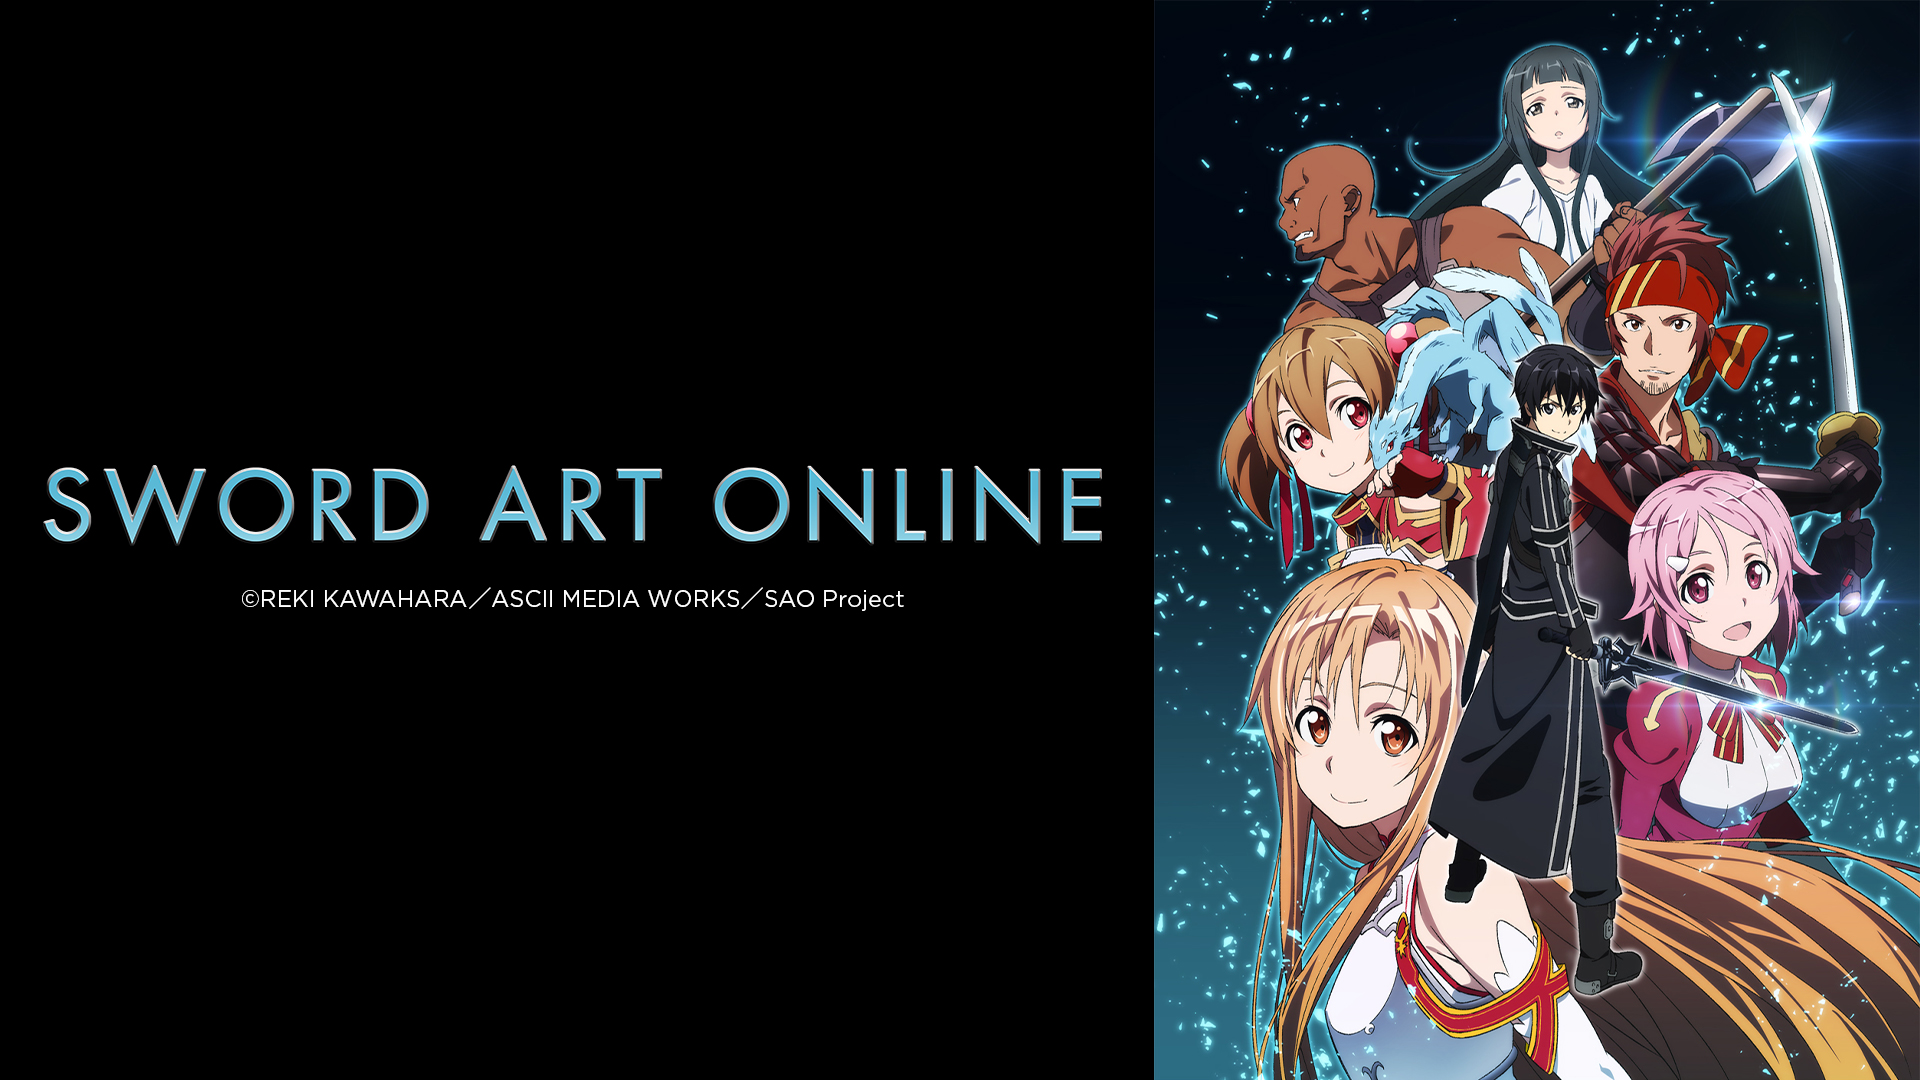 8. Phim Sword Art Online - Kiếm Art Online